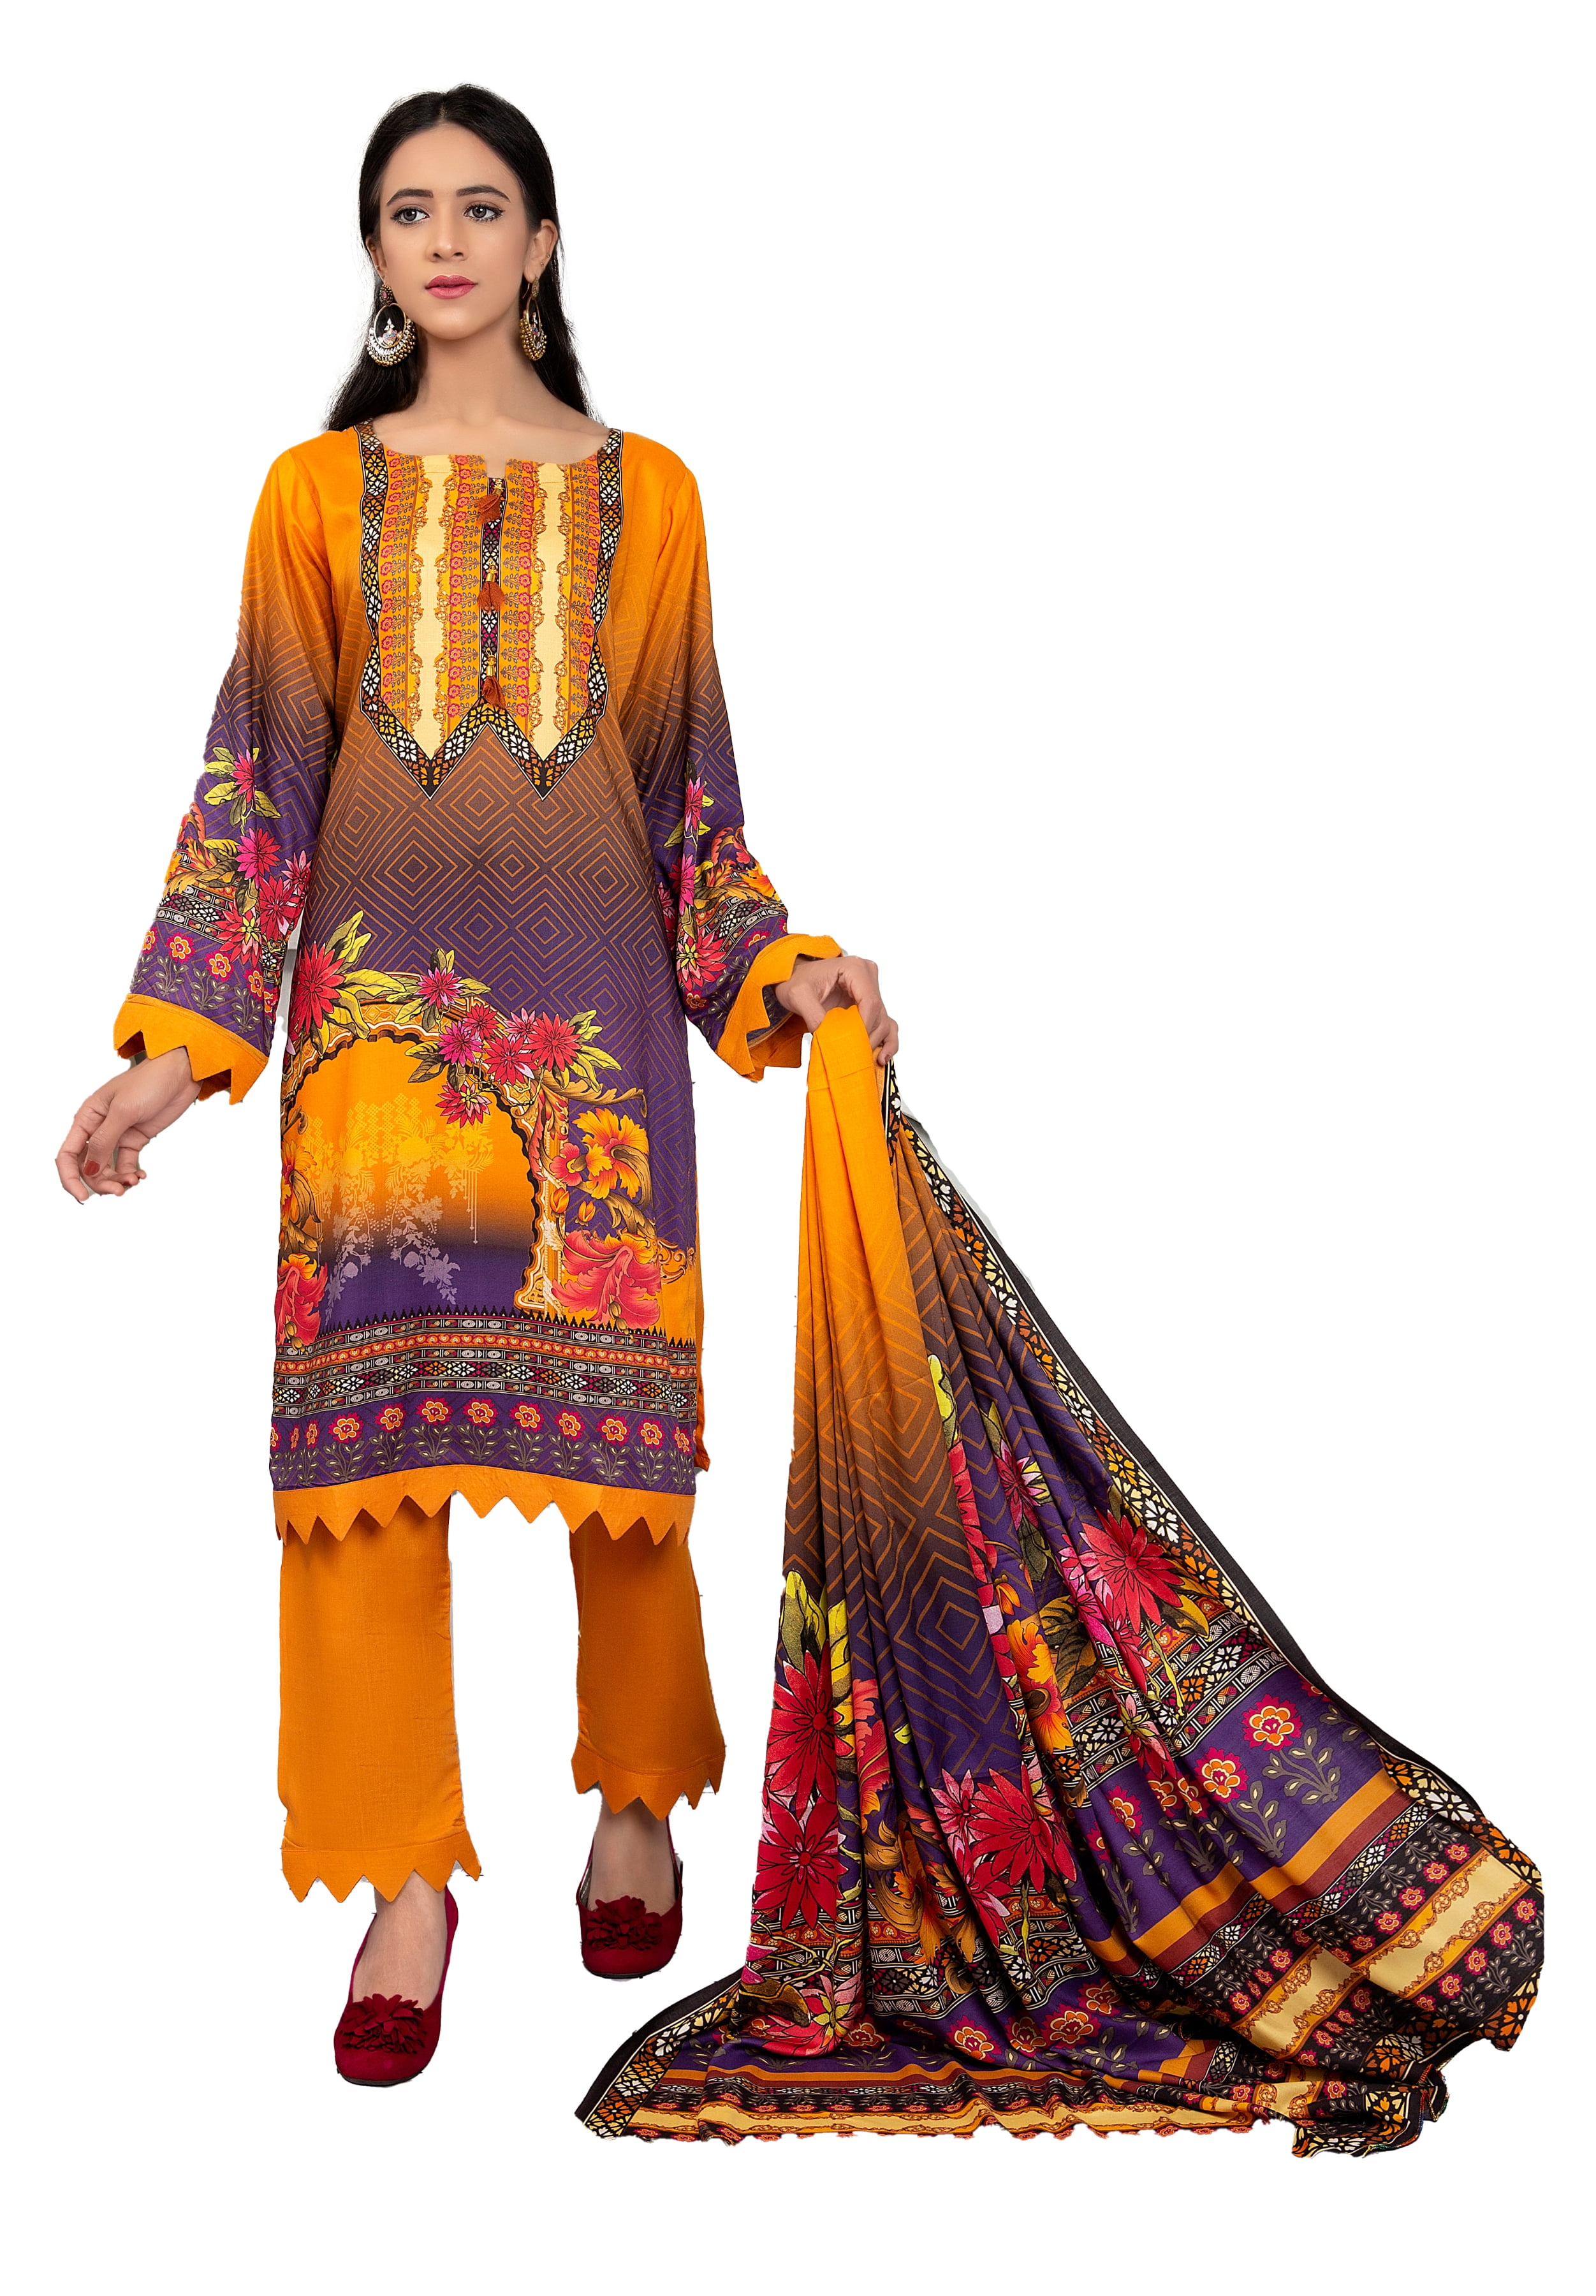 pakistani dresses near me